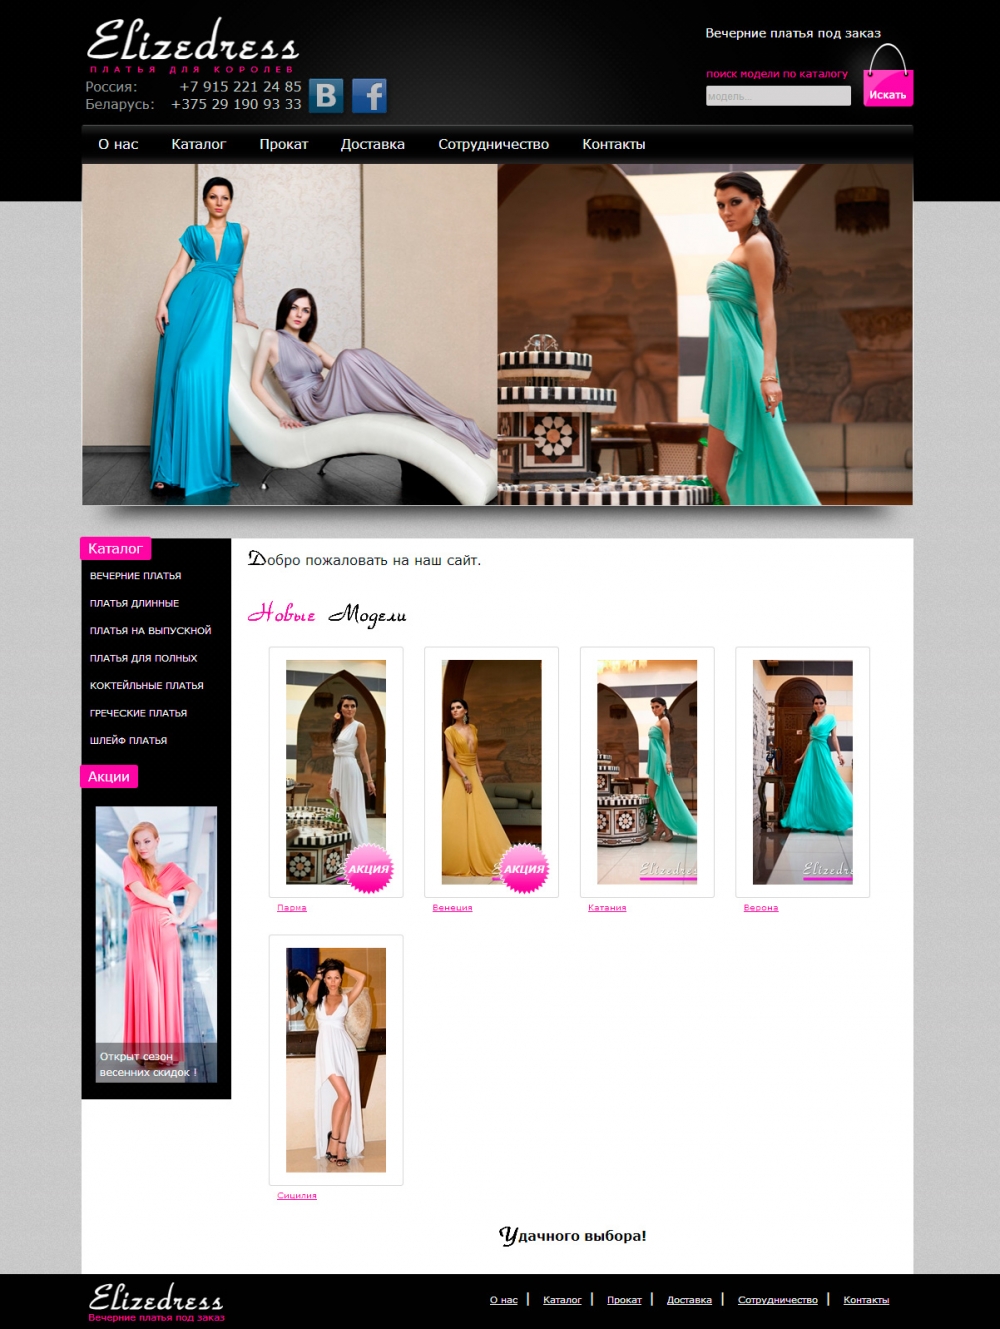 Разработка интернет магазина Elizedress по продаже фирменных платьев j